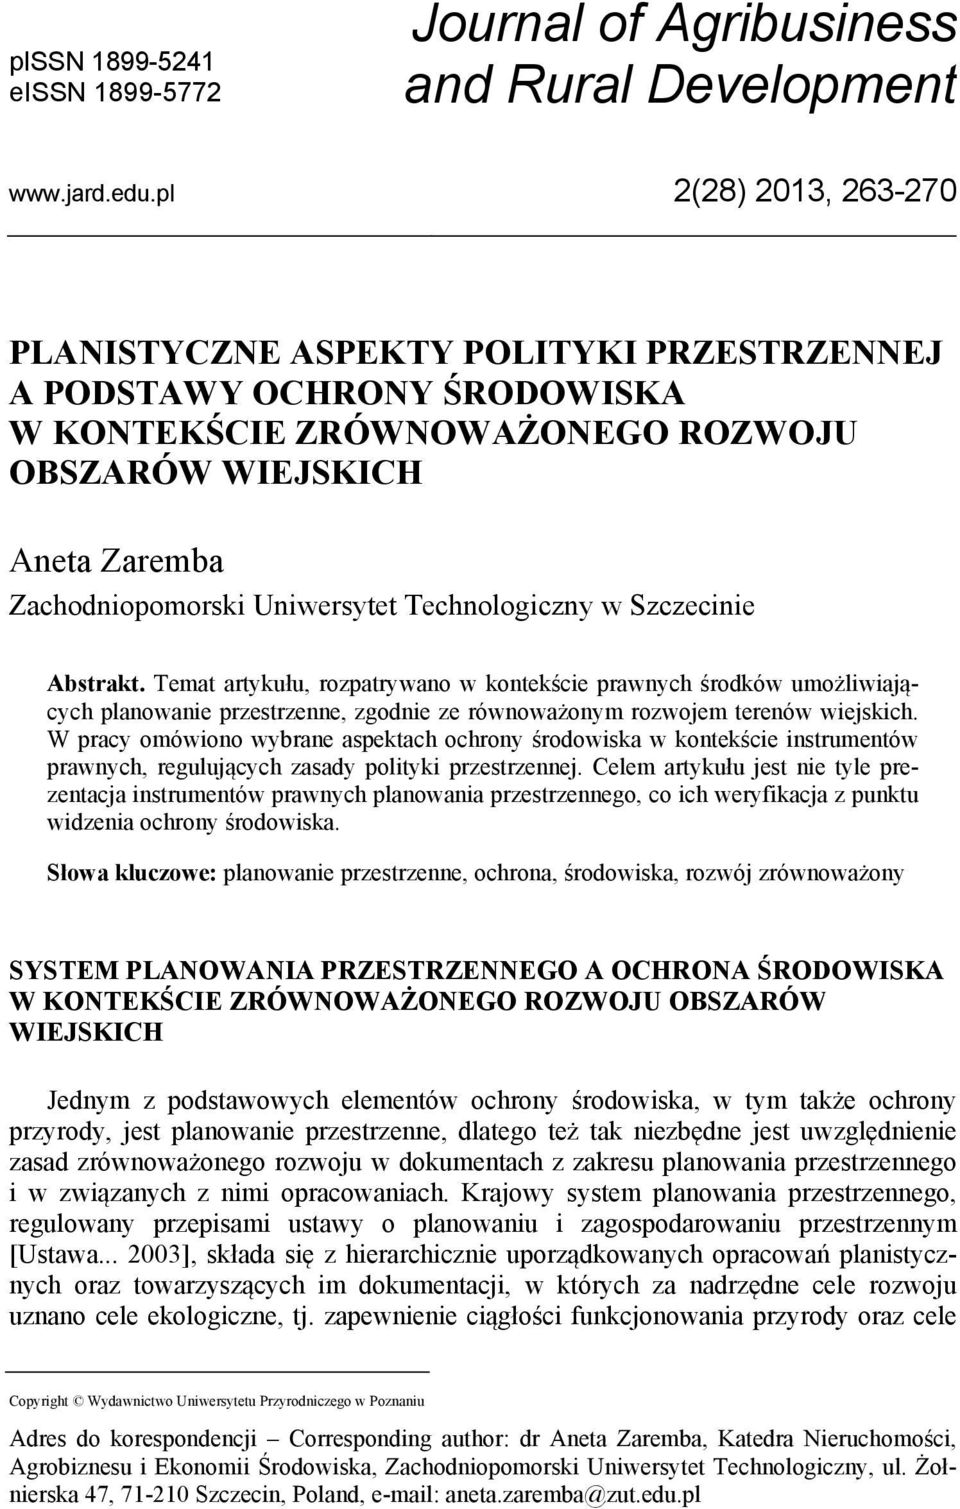 Technologiczny w Szczecinie Abstrakt. Temat artykułu, rozpatrywano w kontekście prawnych środków umożliwiających planowanie przestrzenne, zgodnie ze równoważonym rozwojem terenów wiejskich.